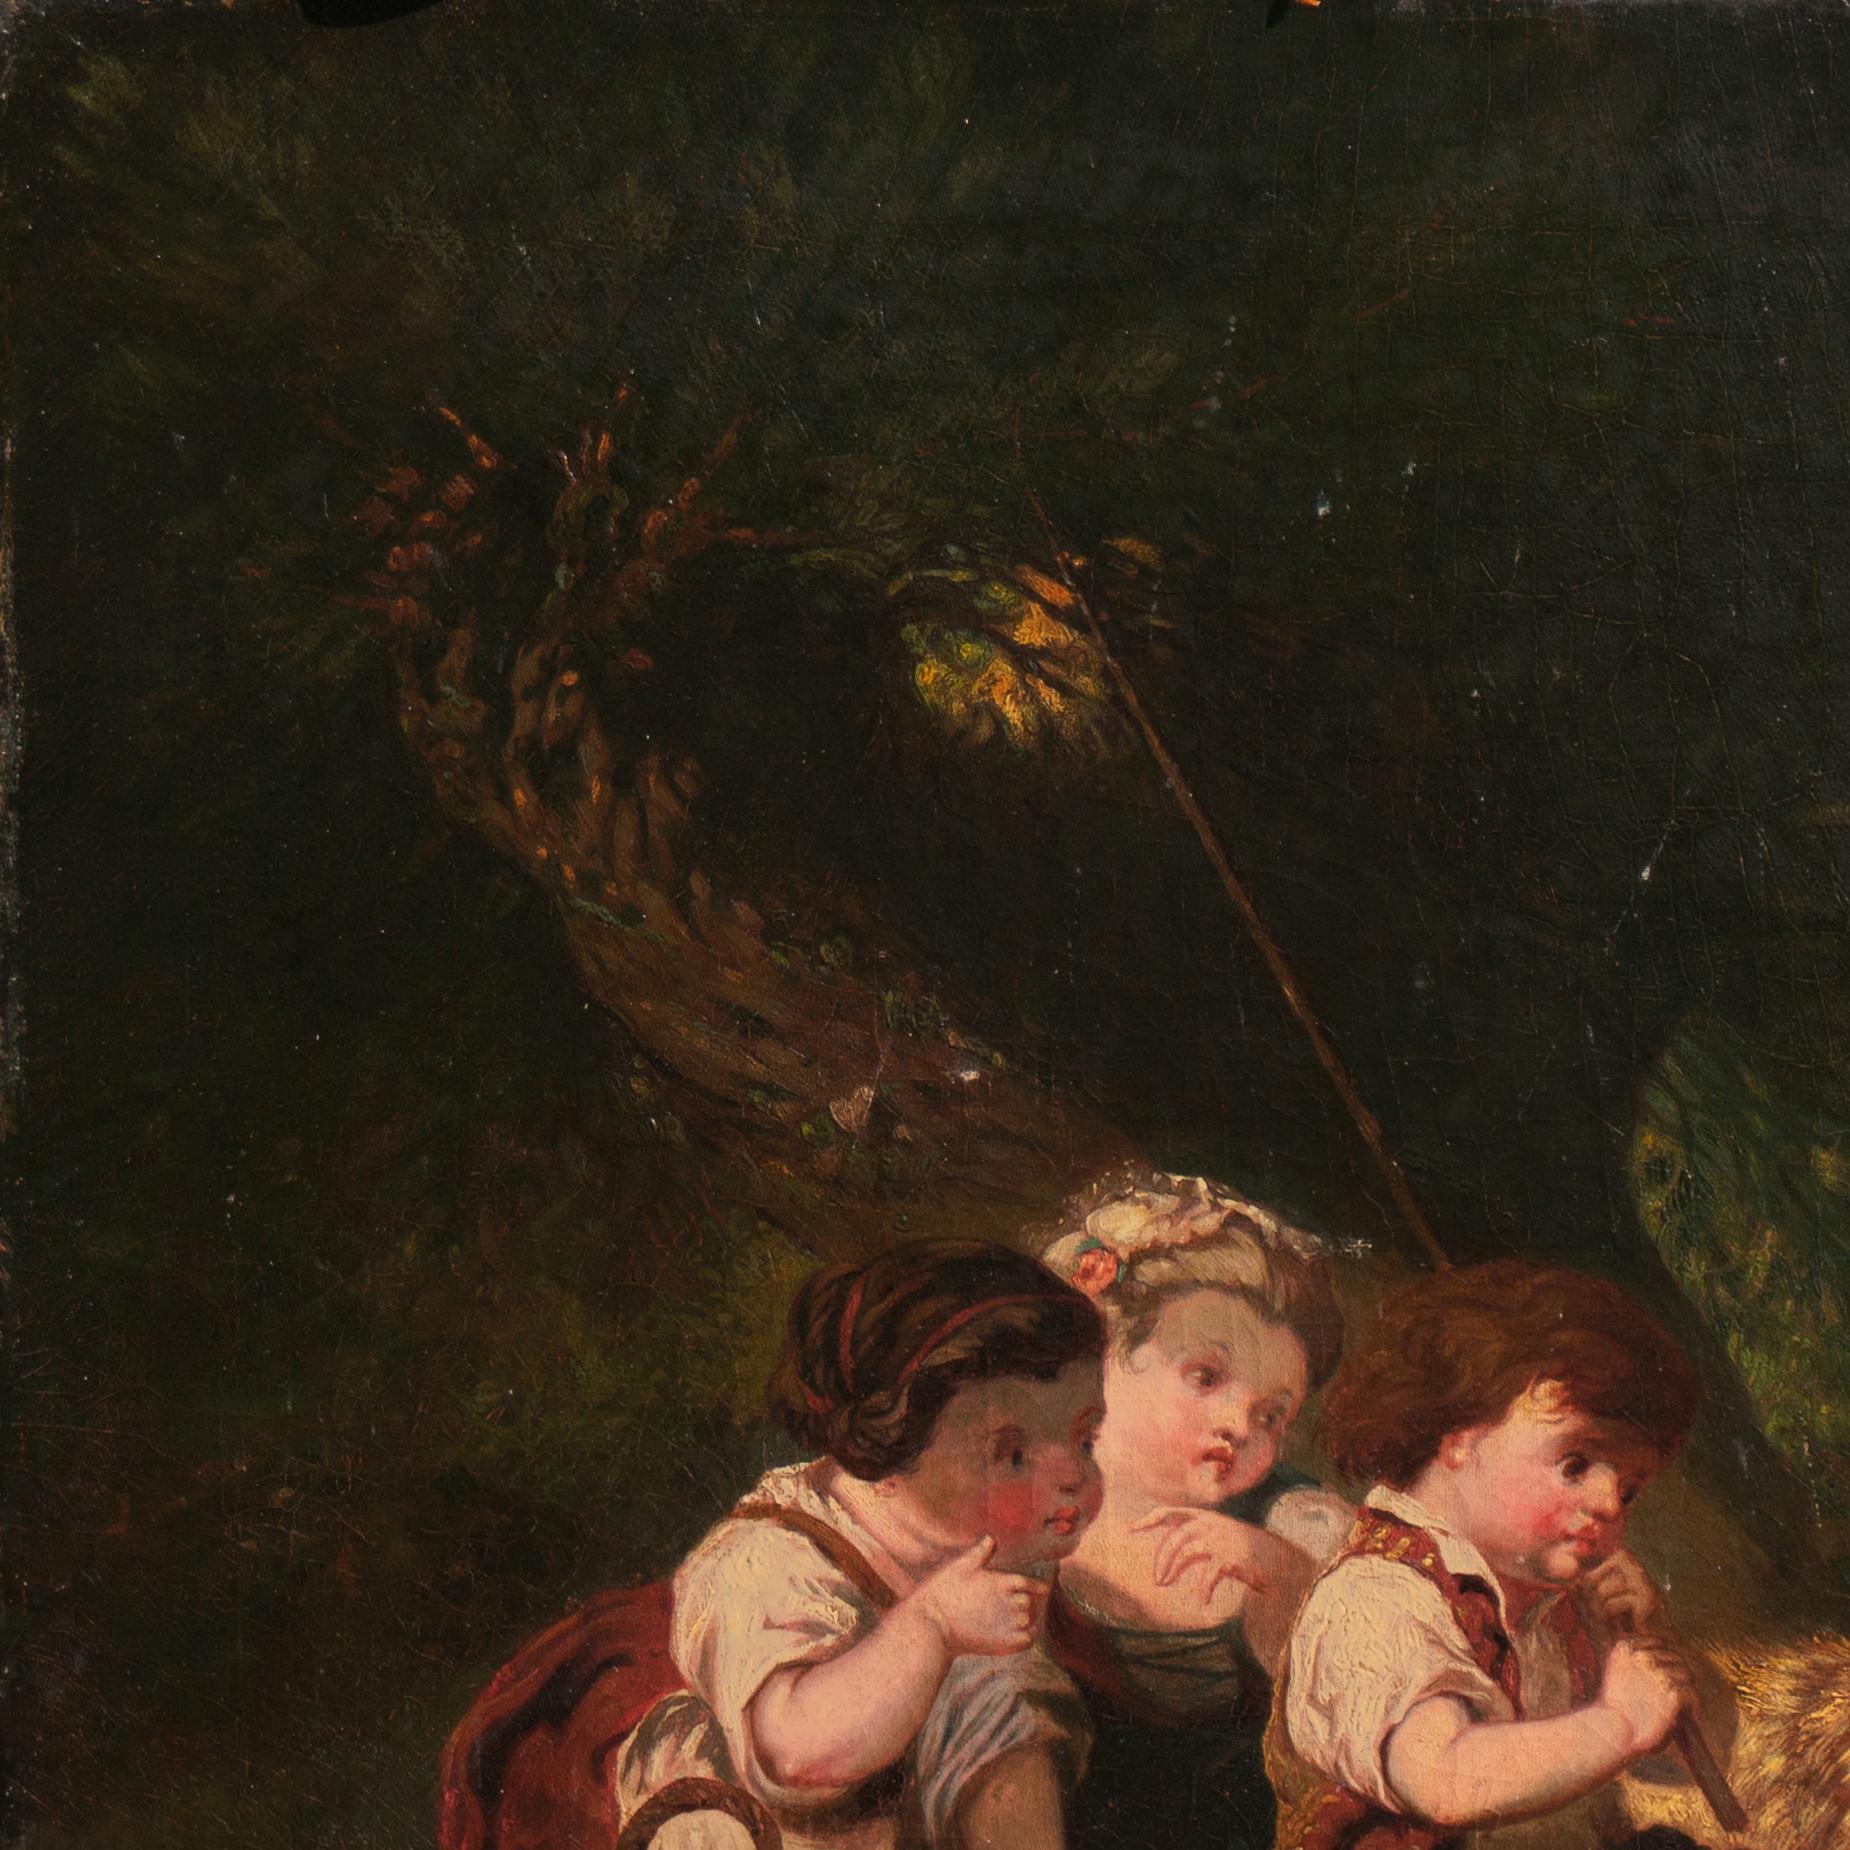 Un important paysage nocturne de l'école américaine du milieu ou de la fin du XIXe siècle montrant trois enfants, accompagnés de leur terrier, pêchant à la lumière d'une lampe et surpris par l'apparition d'un grand poisson-chat. Une œuvre de genre